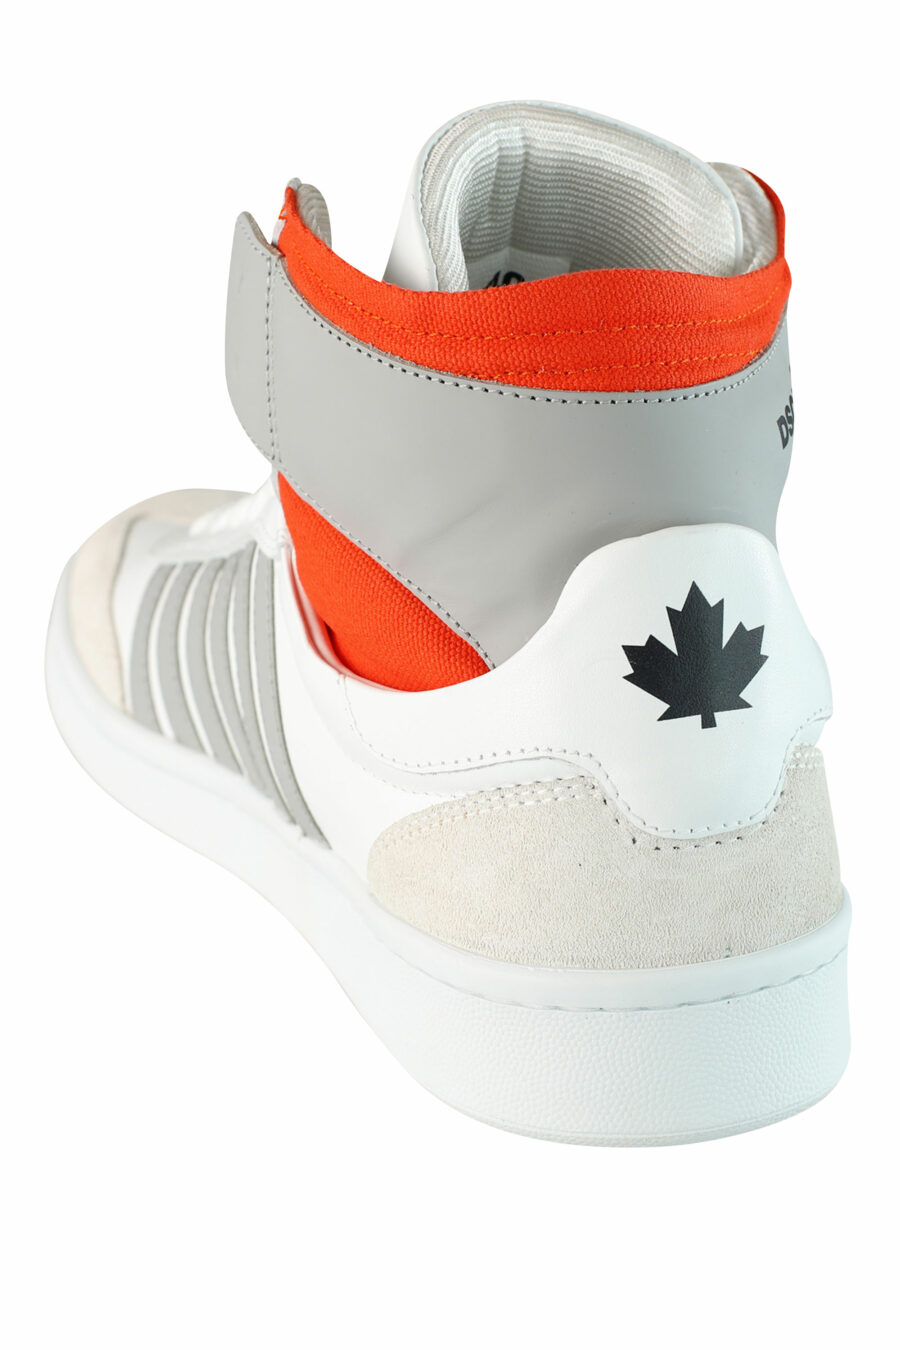 Zapatillas blancas mix "boxer" estilo botín con detalles naranjas y grises - IMG 1504